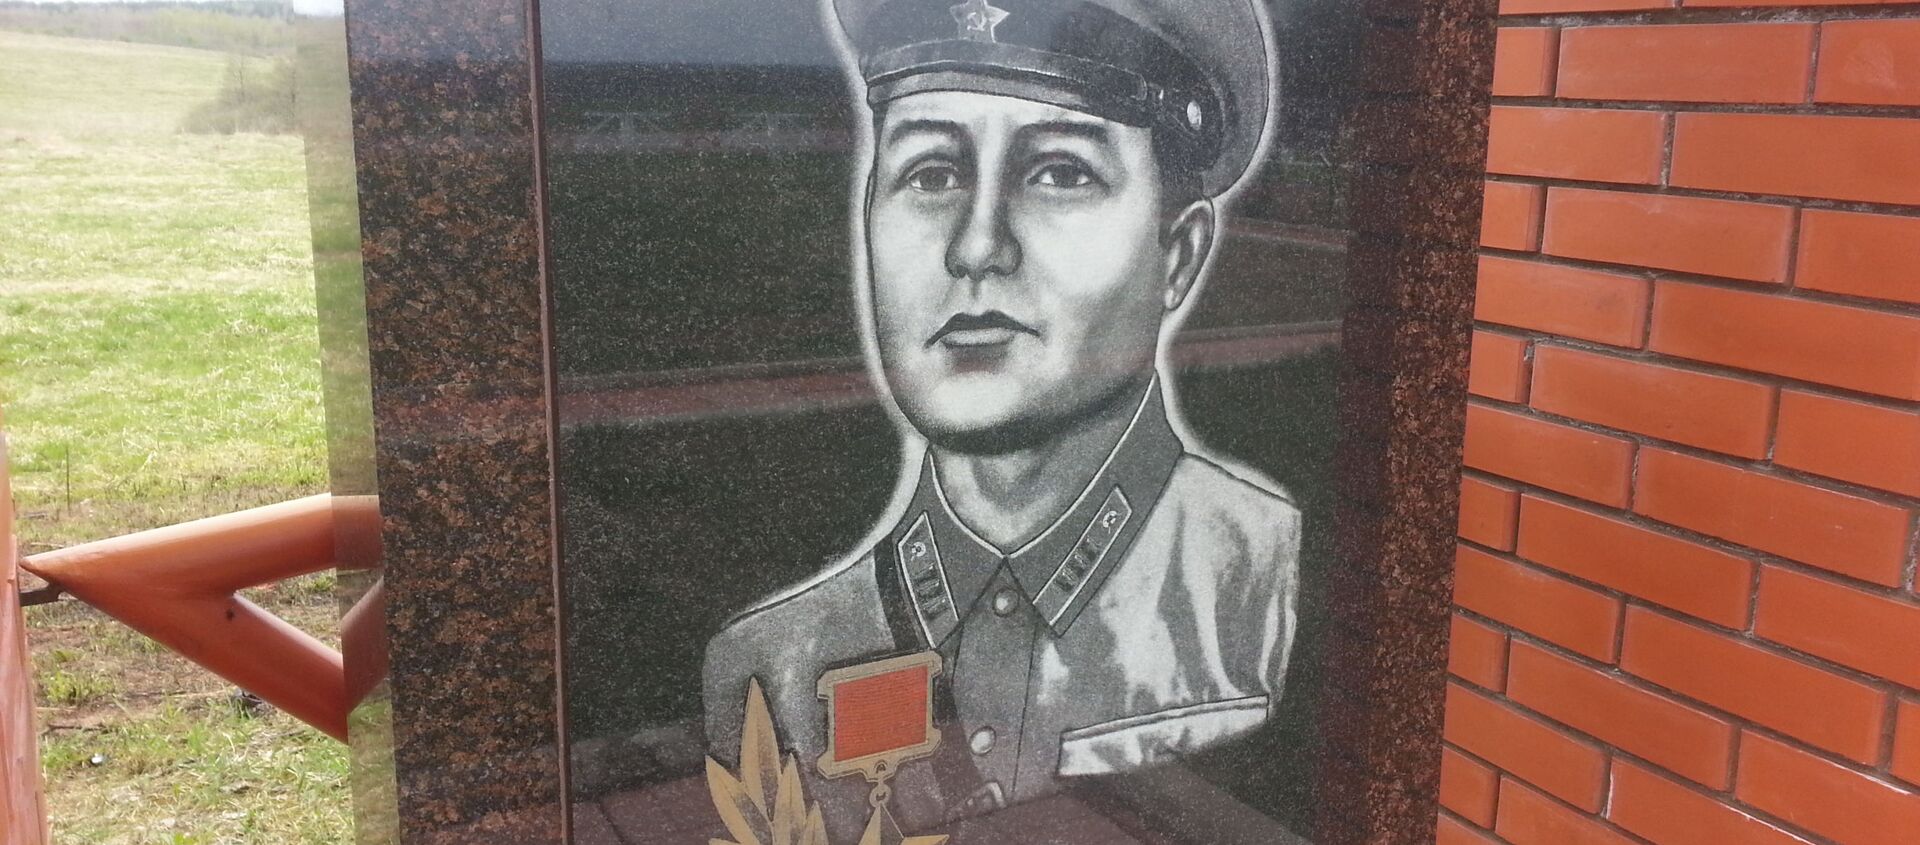 Памятник Яну Райнбергу на мемориале в деревне Монаково - Sputnik Latvija, 1920, 16.05.2020